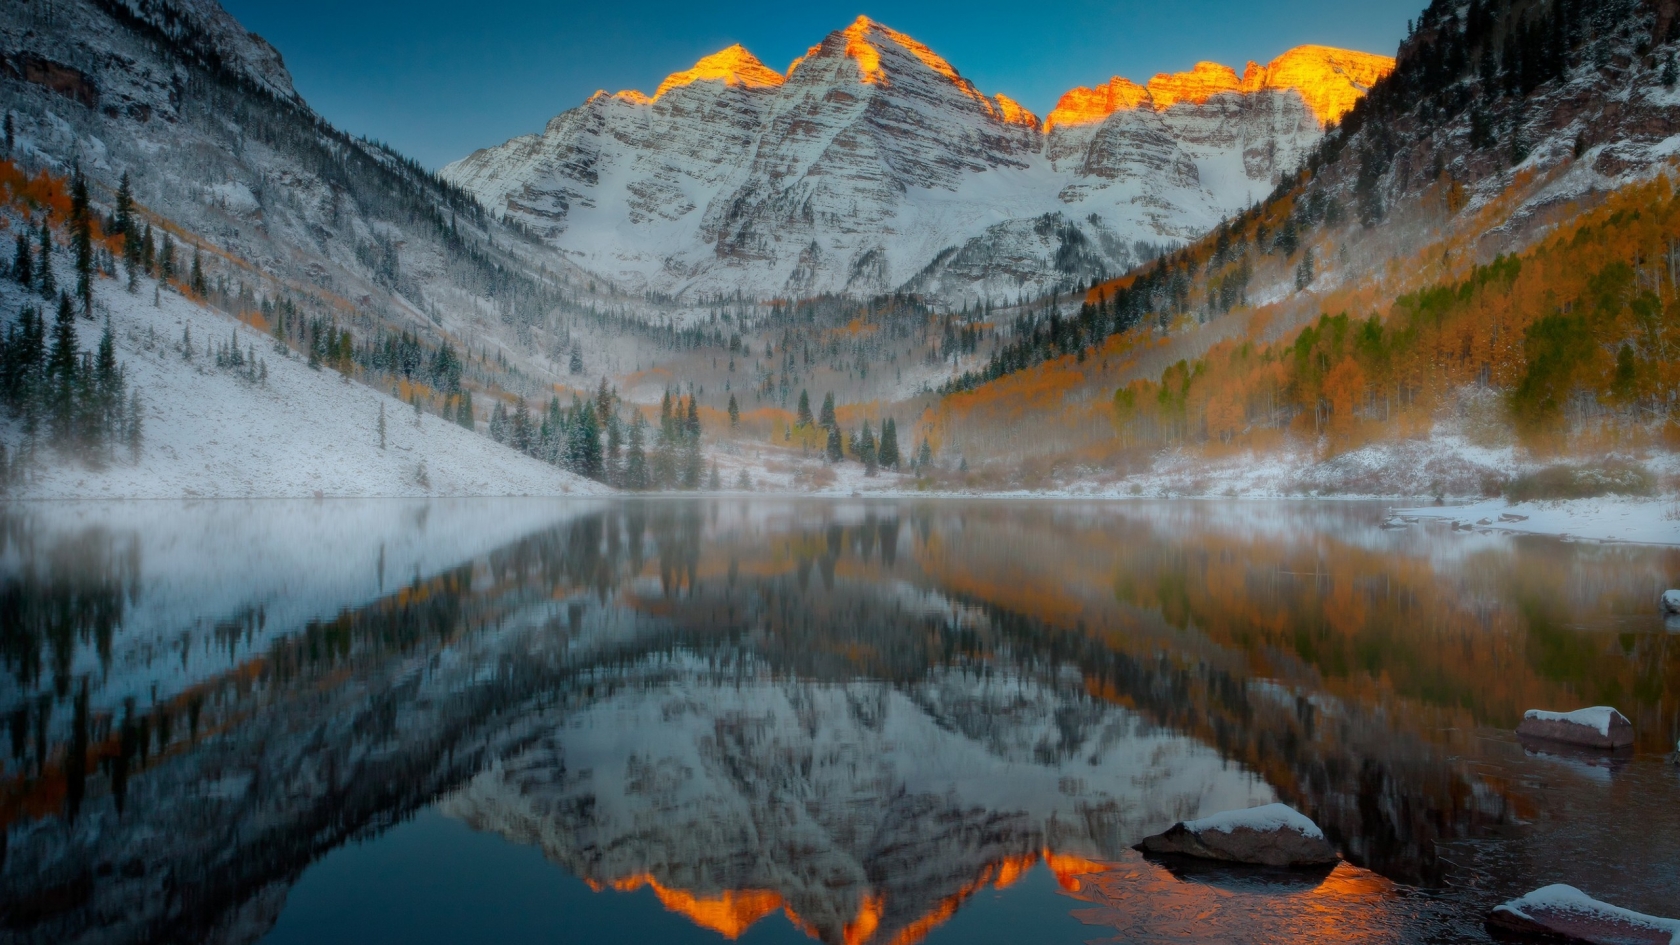 Aspen Mountain Colorado for 1680 x 945 HDTV resolution